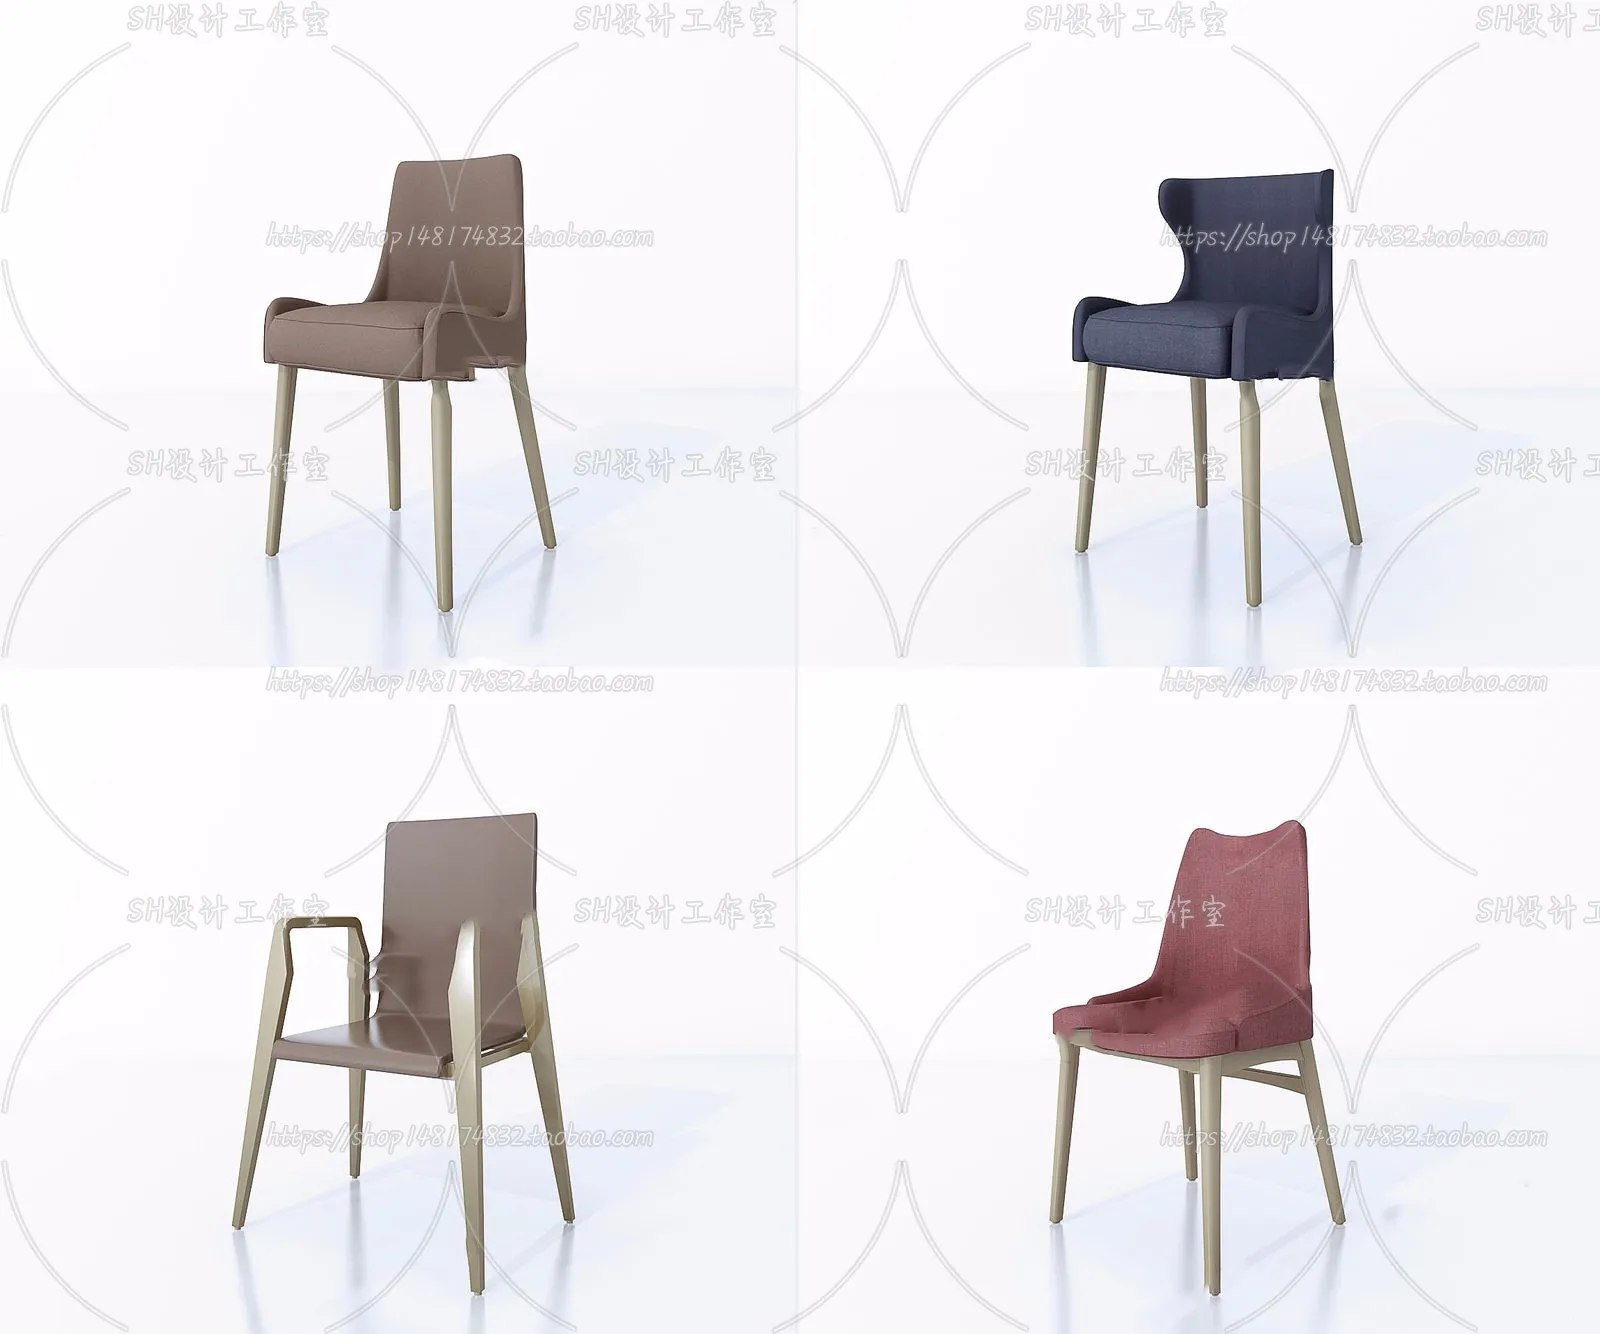 Chair – Single Chair 3D Models – 2000